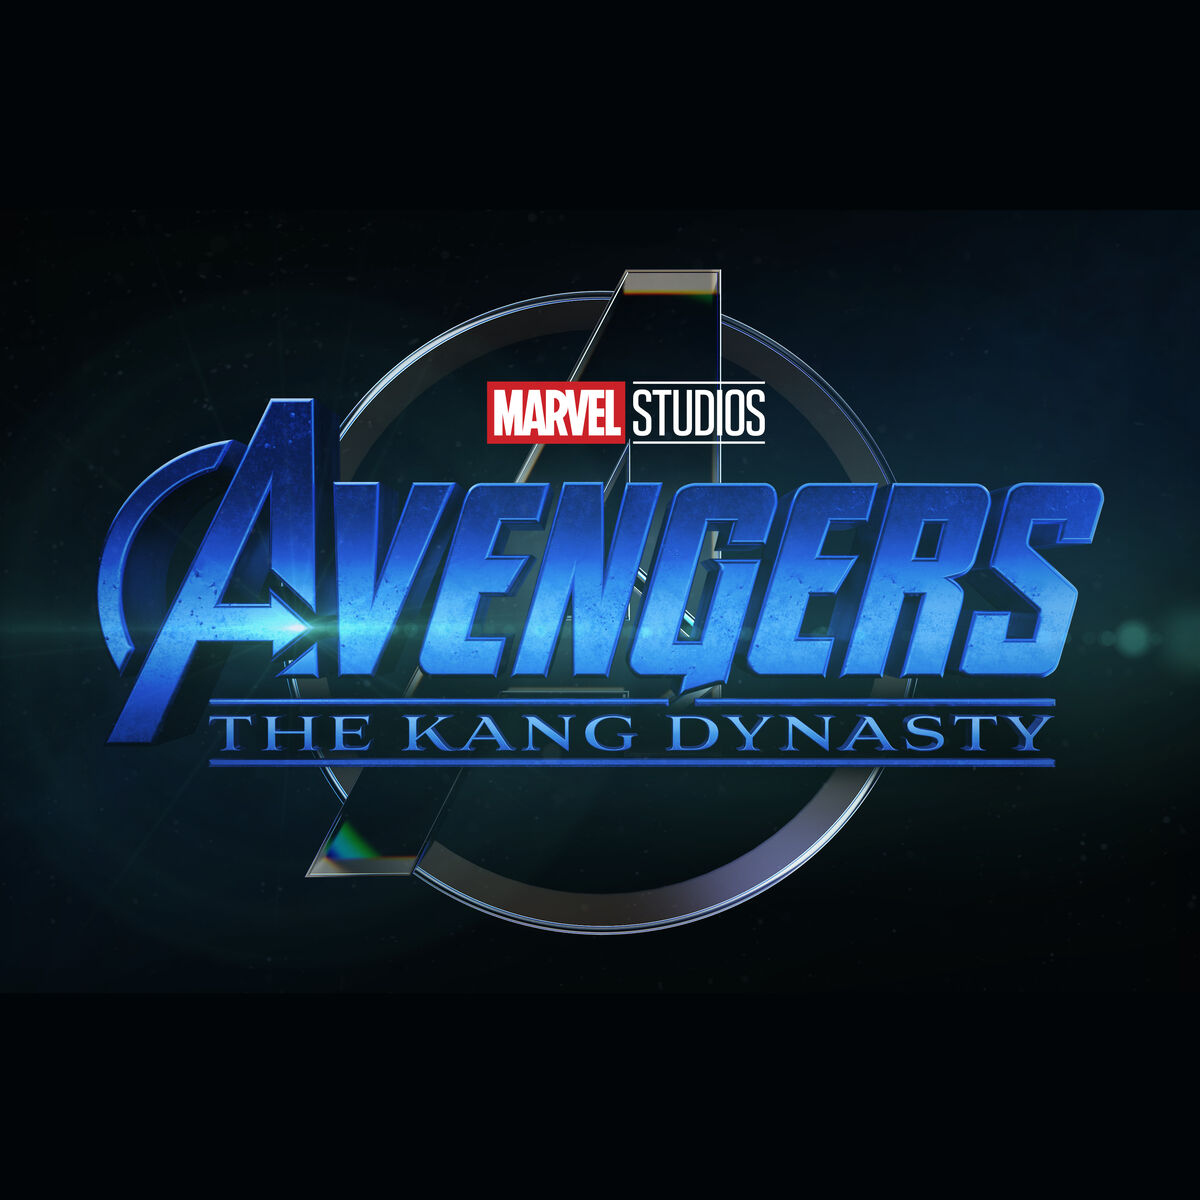 Marvel adia lançamento de filmes e introduz a dinastia Kang ao Universo  Cinematográfico – Cajuína de Pixel